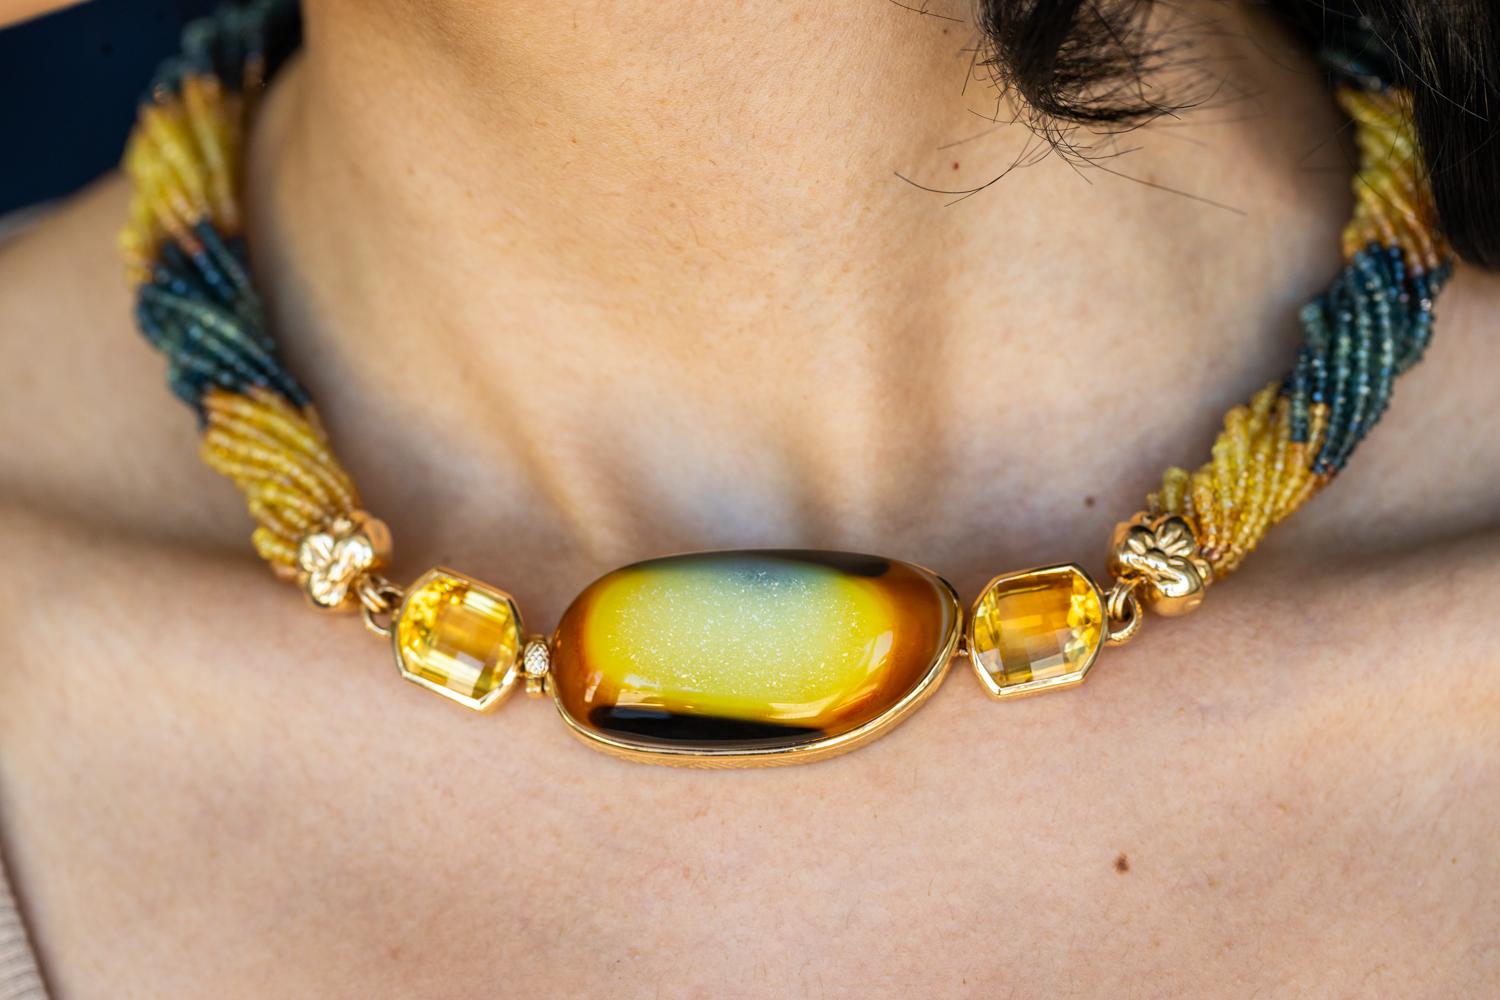 Diese einzigartige 8-karätige Druzy-Halskette von Stephen Dweck ist ein Beweis für seinen Blick für außergewöhnliche natürliche Schönheit und sein Können im Schmuckdesign. Die Halskette besteht aus einem zentralen Druzy-Anhänger, der mit einer Reihe